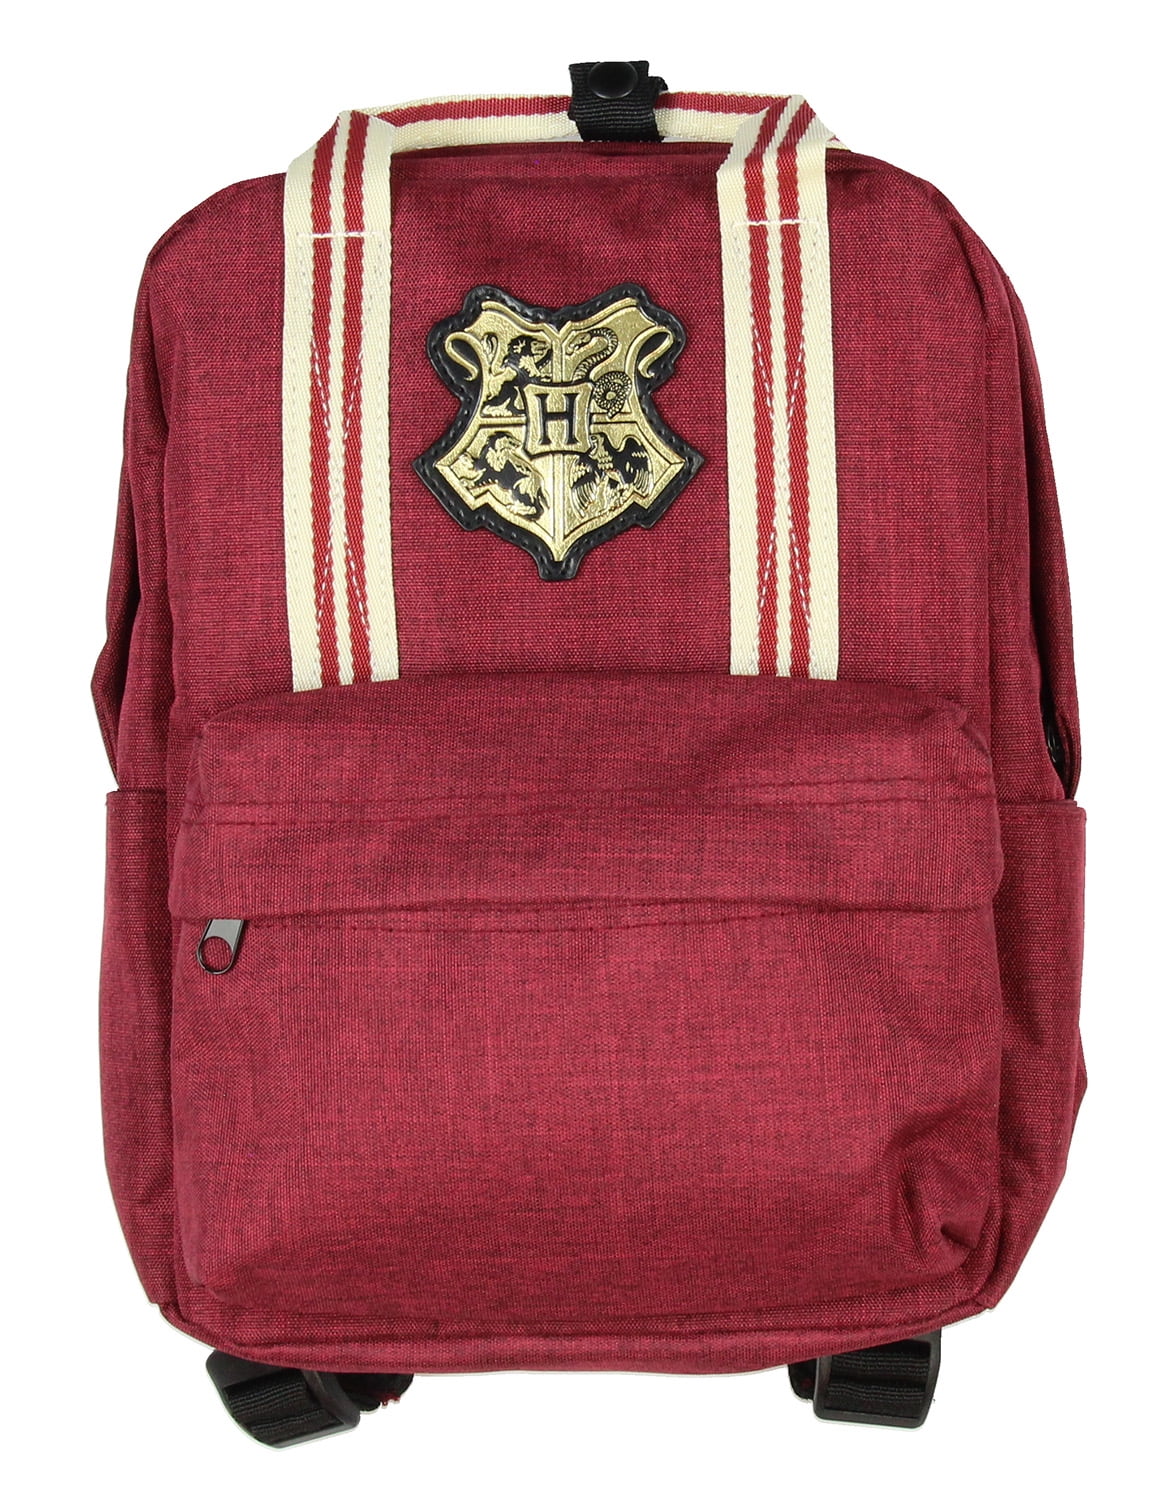 NEW Harry Potter Crest Gryffindor Backpack School Canvas Bag New 